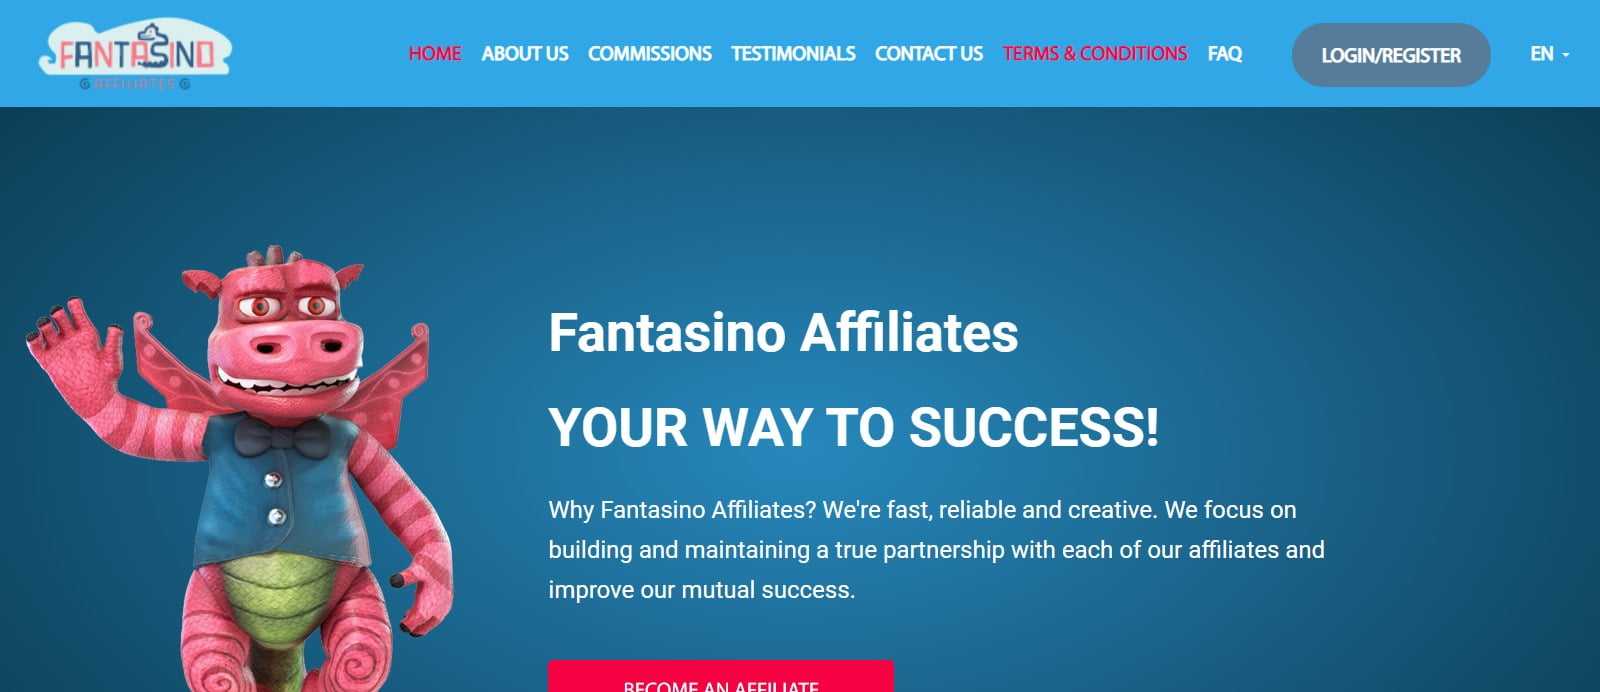 Fantasino Affiliates Program Review: 25% - 50% Recurring Revenue share